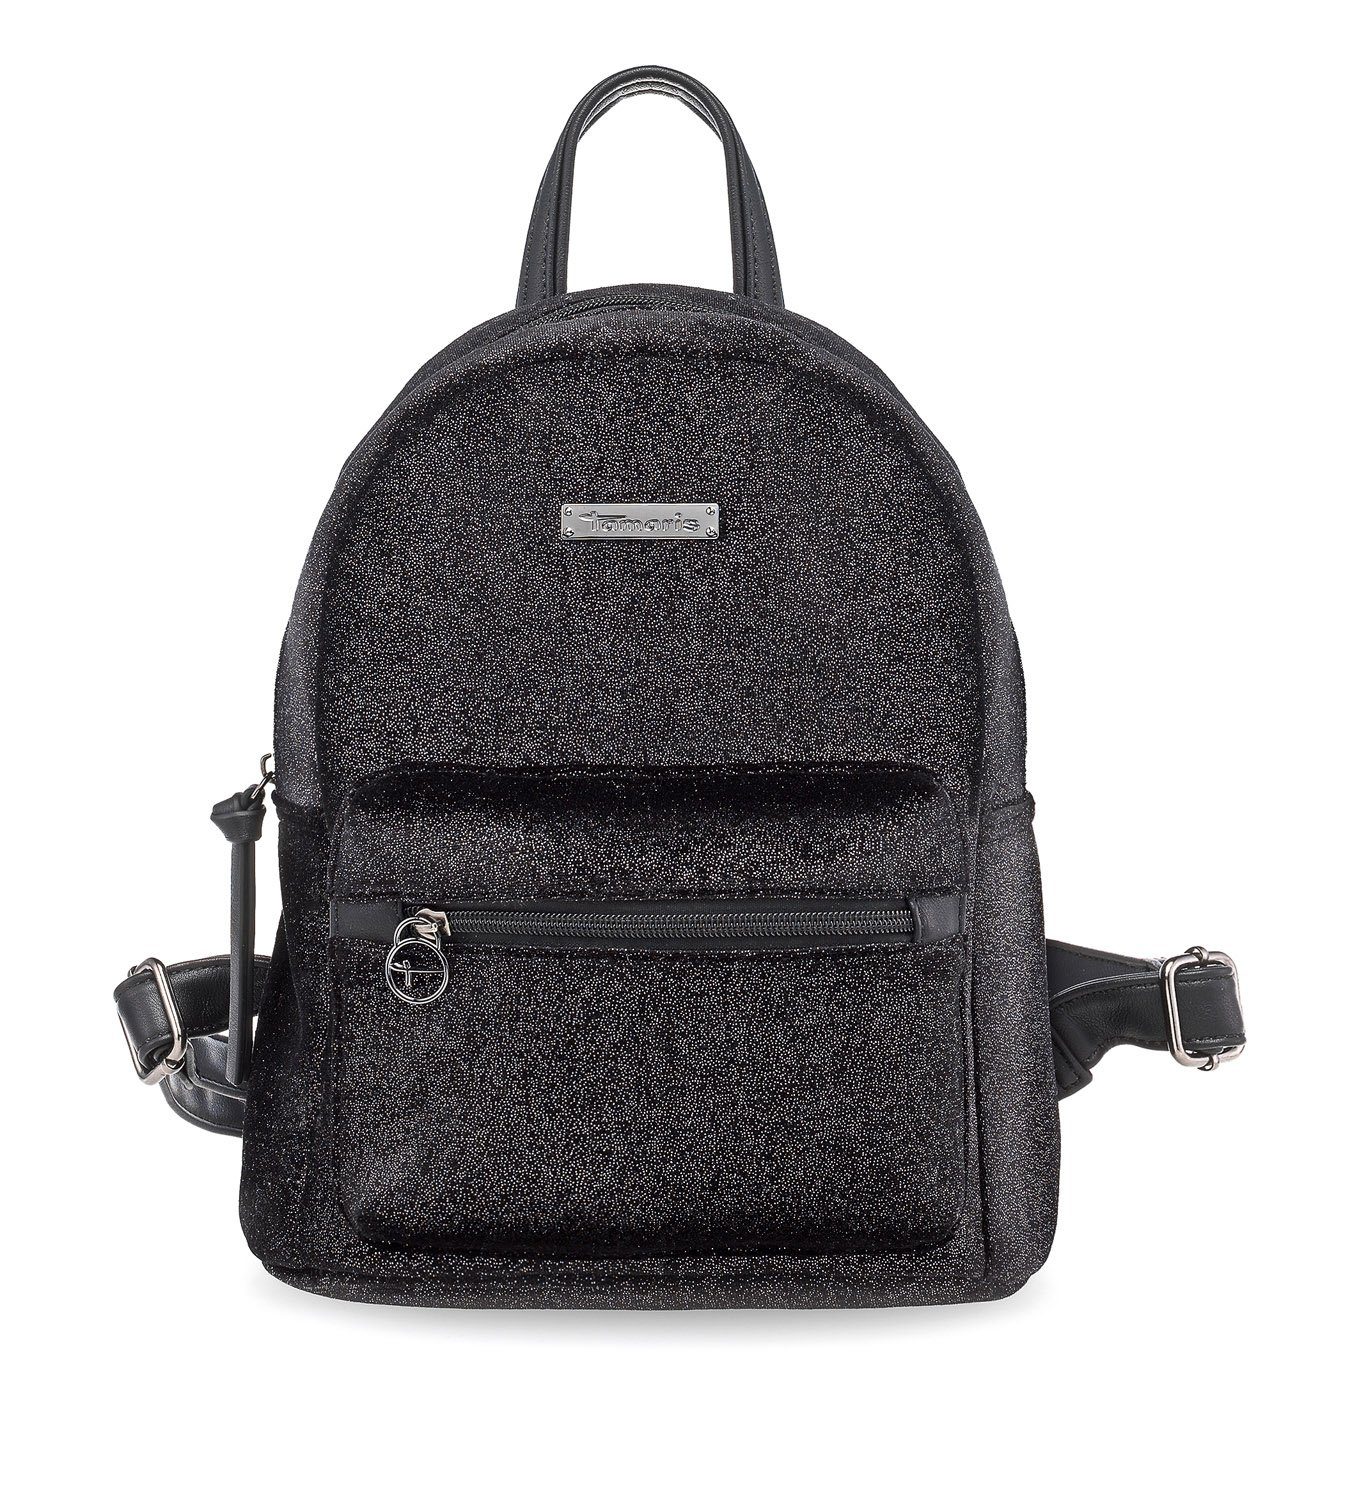 Tamaris Handtasche Volma (Set), Damen Handbag Backpack Rucksack schwarz metallic | Handtaschen